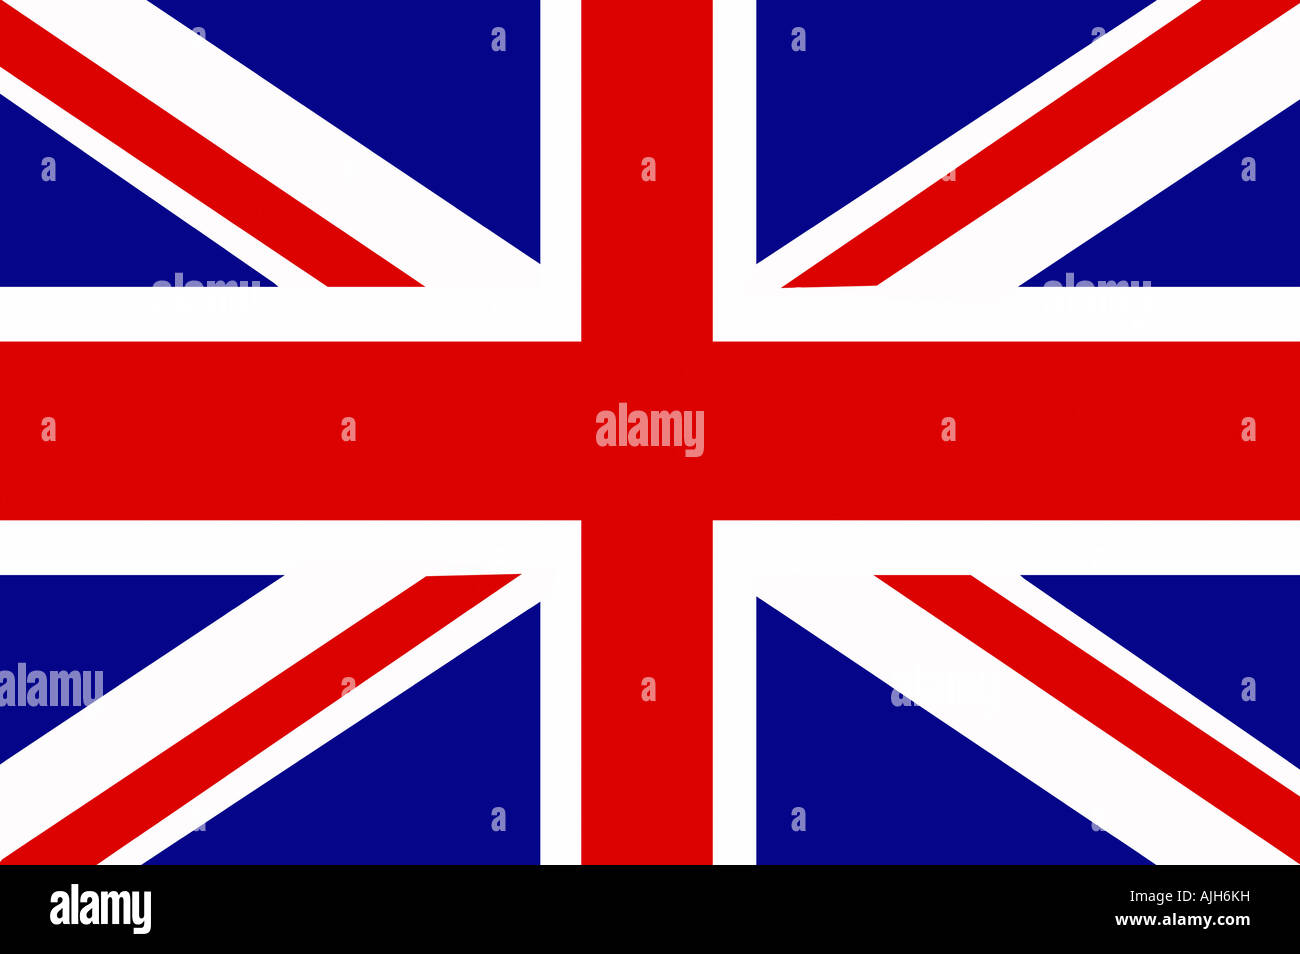 Union Jack flag illustration. Drapeau national du Royaume-Uni Banque D'Images